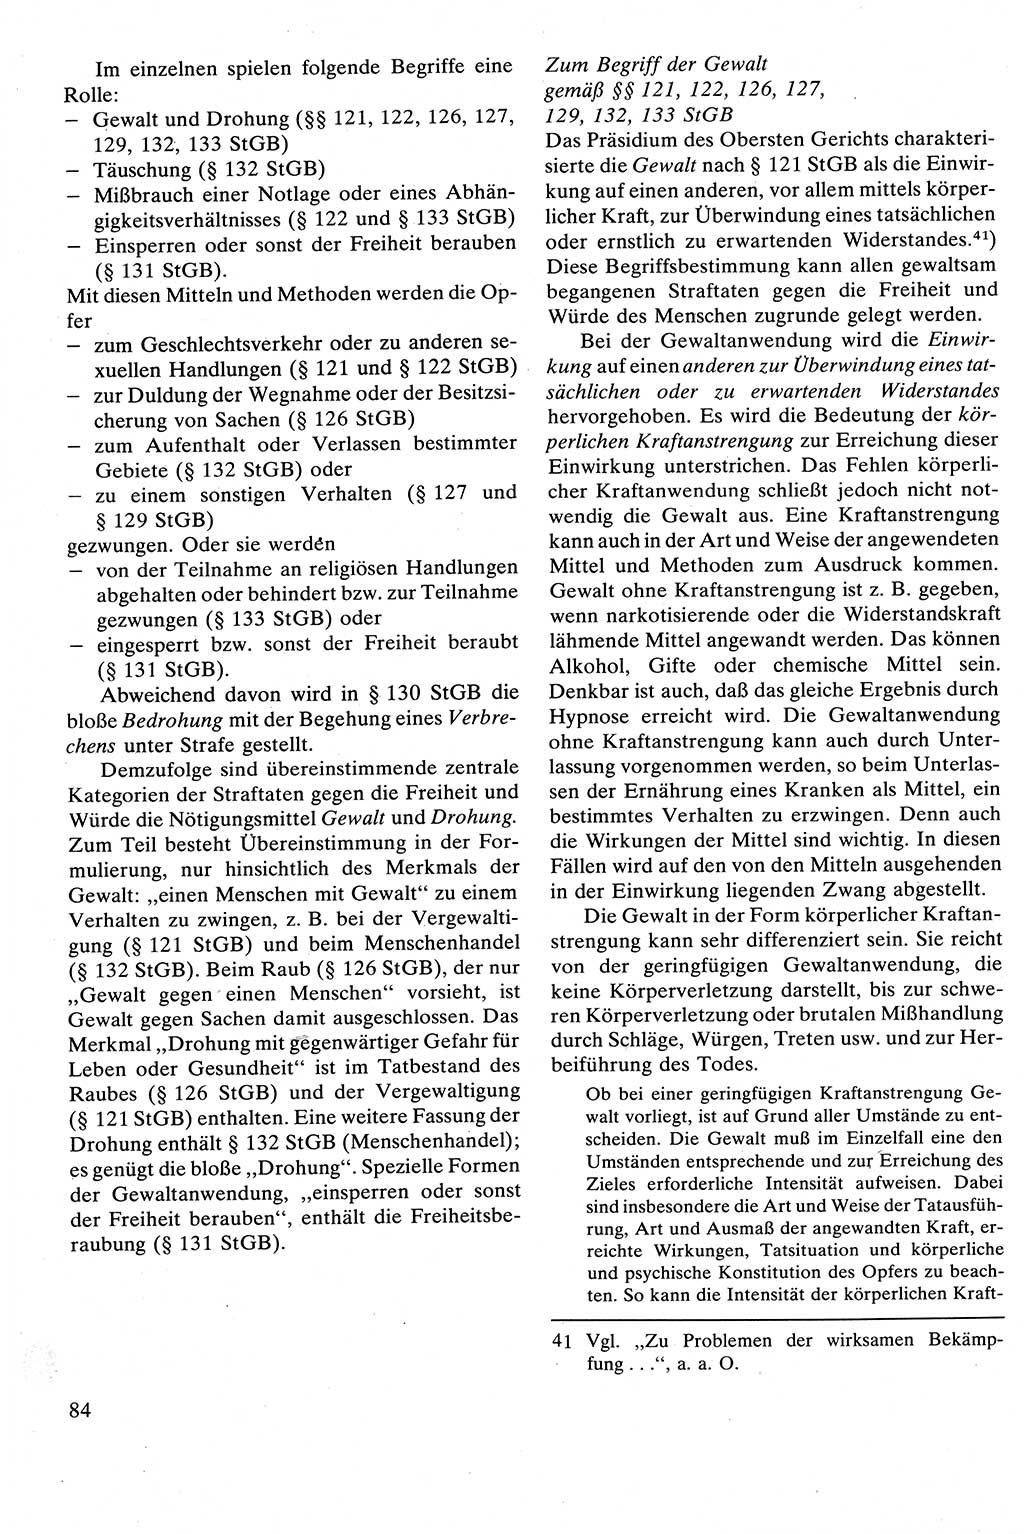 Strafrecht [Deutsche Demokratische Republik (DDR)], Besonderer Teil, Lehrbuch 1981, Seite 84 (Strafr. DDR BT Lb. 1981, S. 84)